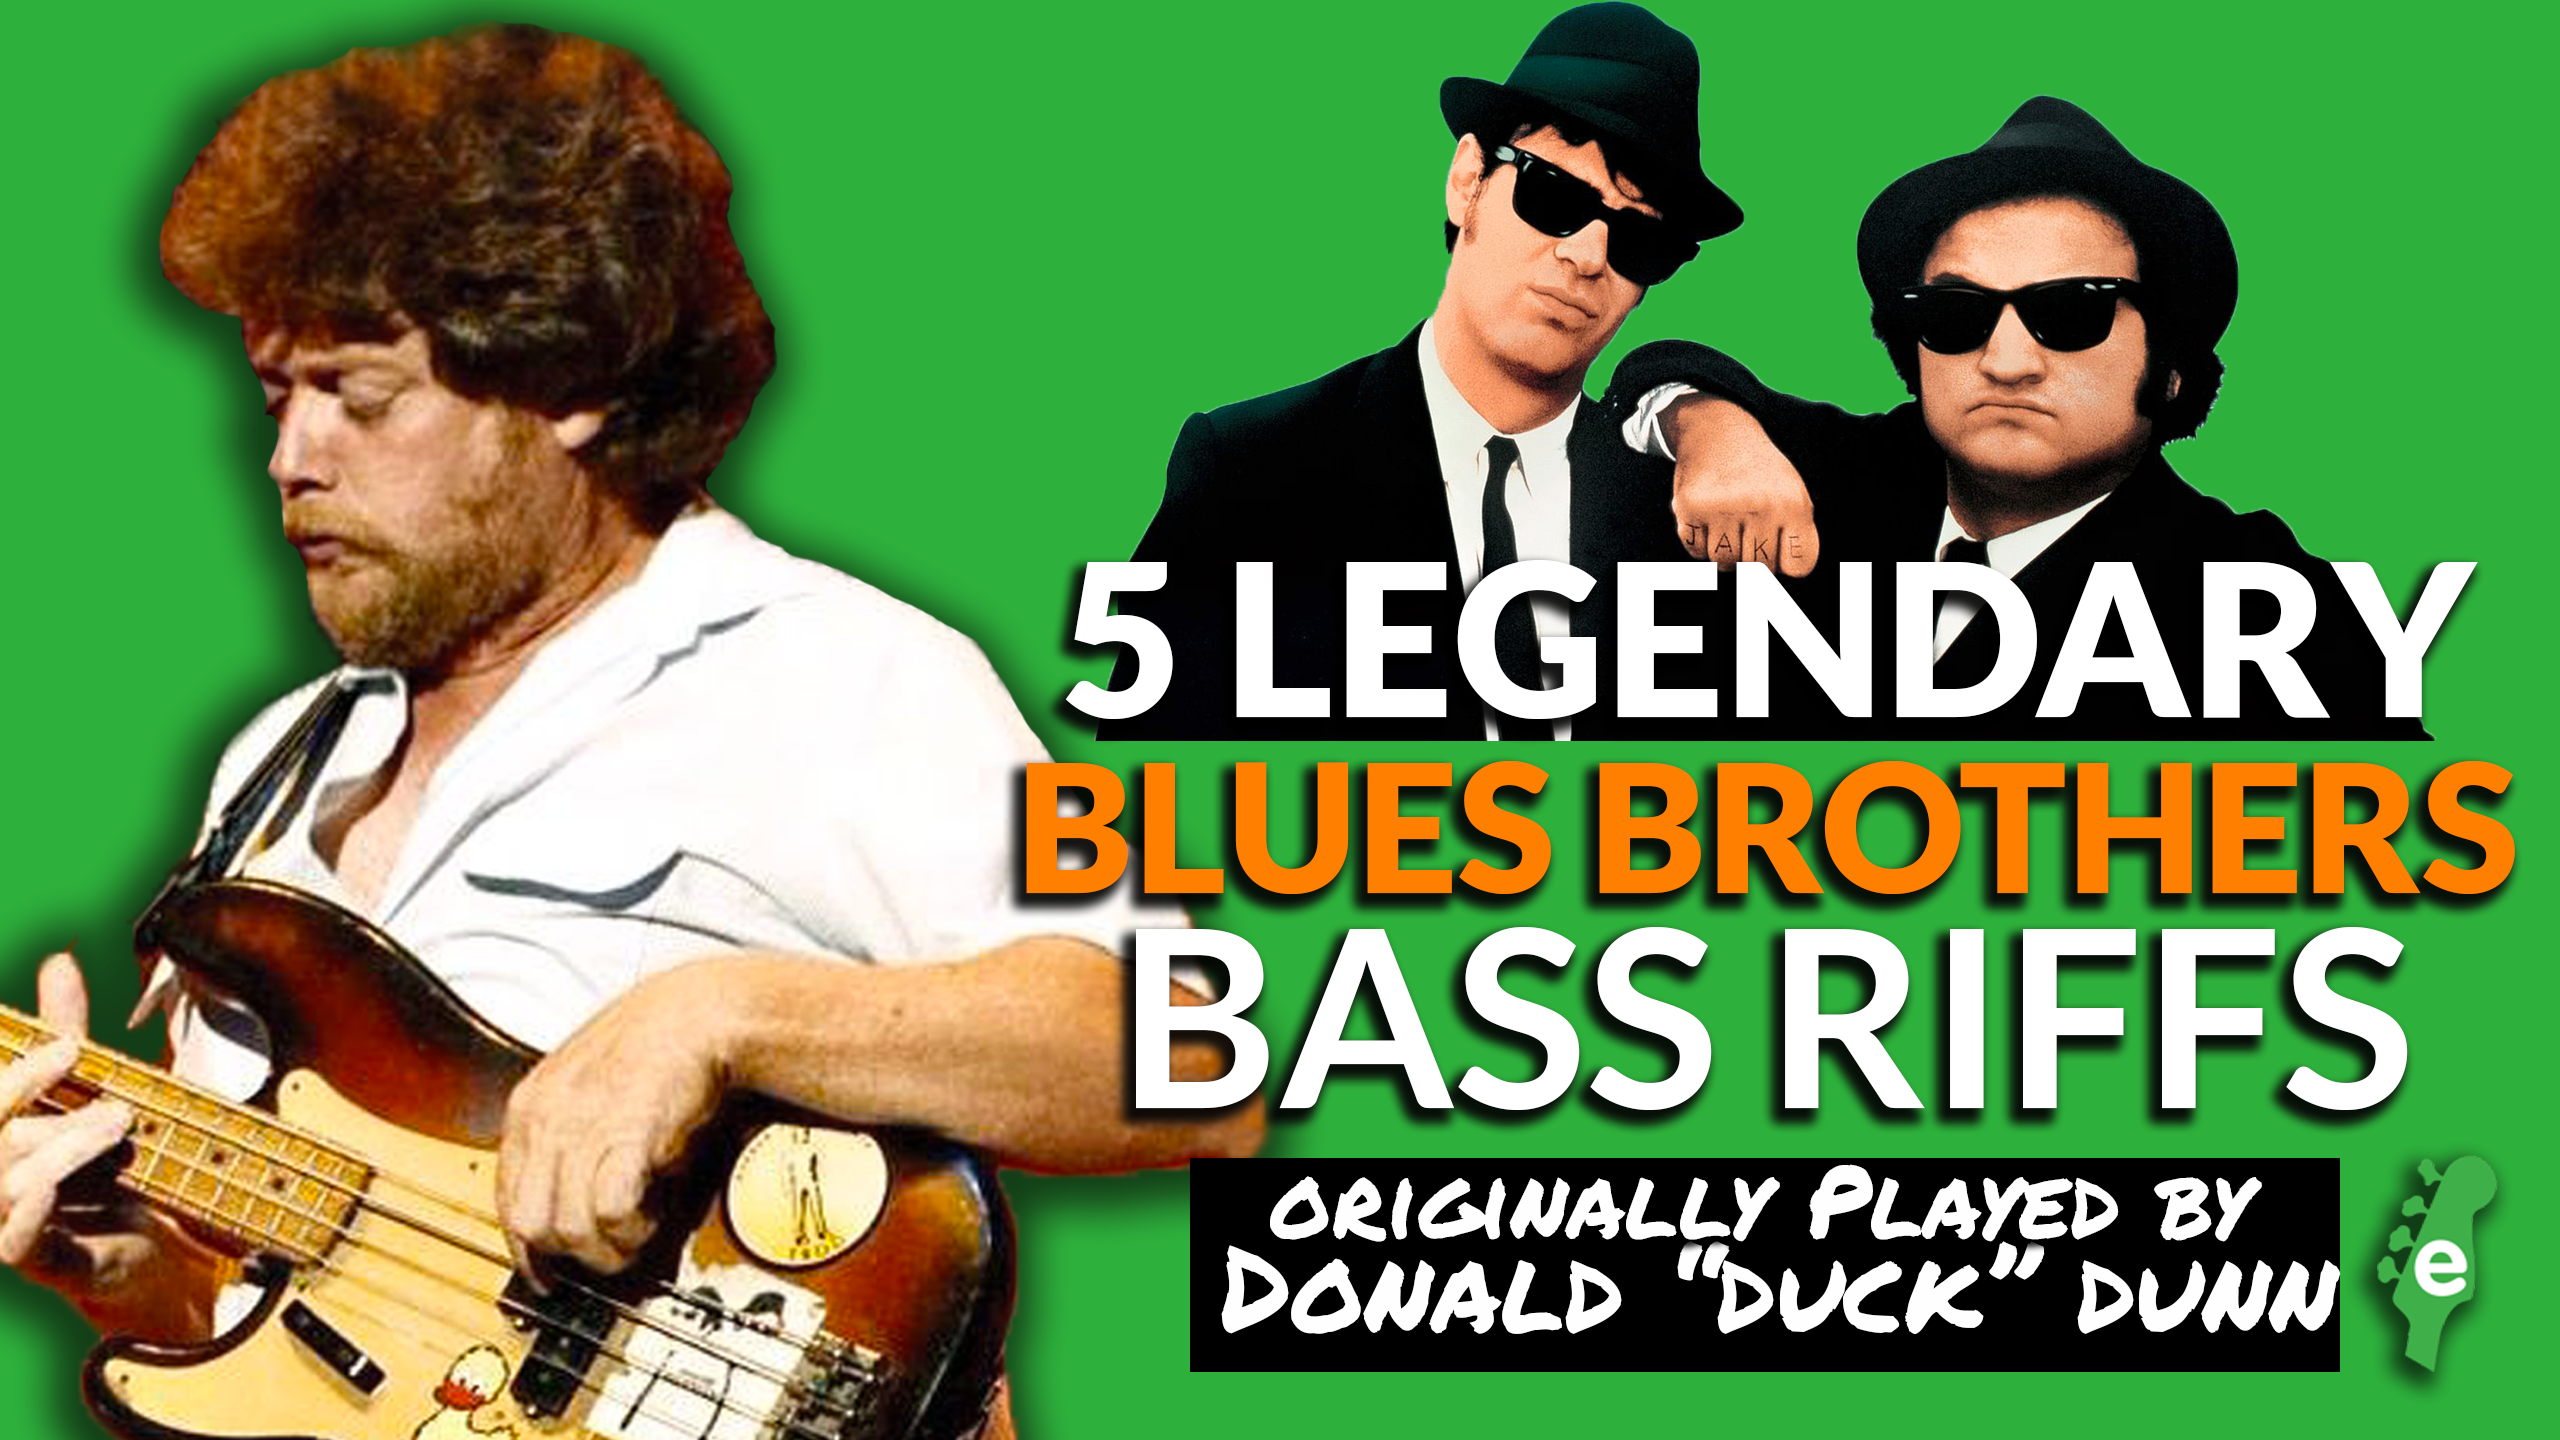 Don bass. Bass brothers. Бас рифф. Donald “Duck” Dunn братья блюз. Donald "Duck" Dunn Bass 1969.